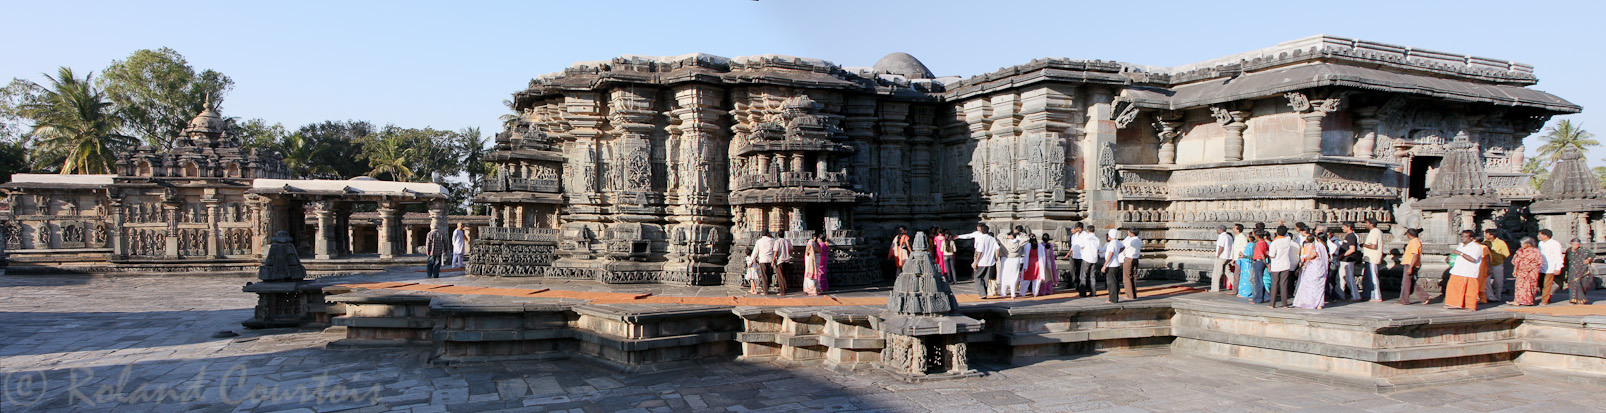 Belur, temple de Chennakeshava: vue d'ensemble du temple à l'intérieur de l'enceinte.